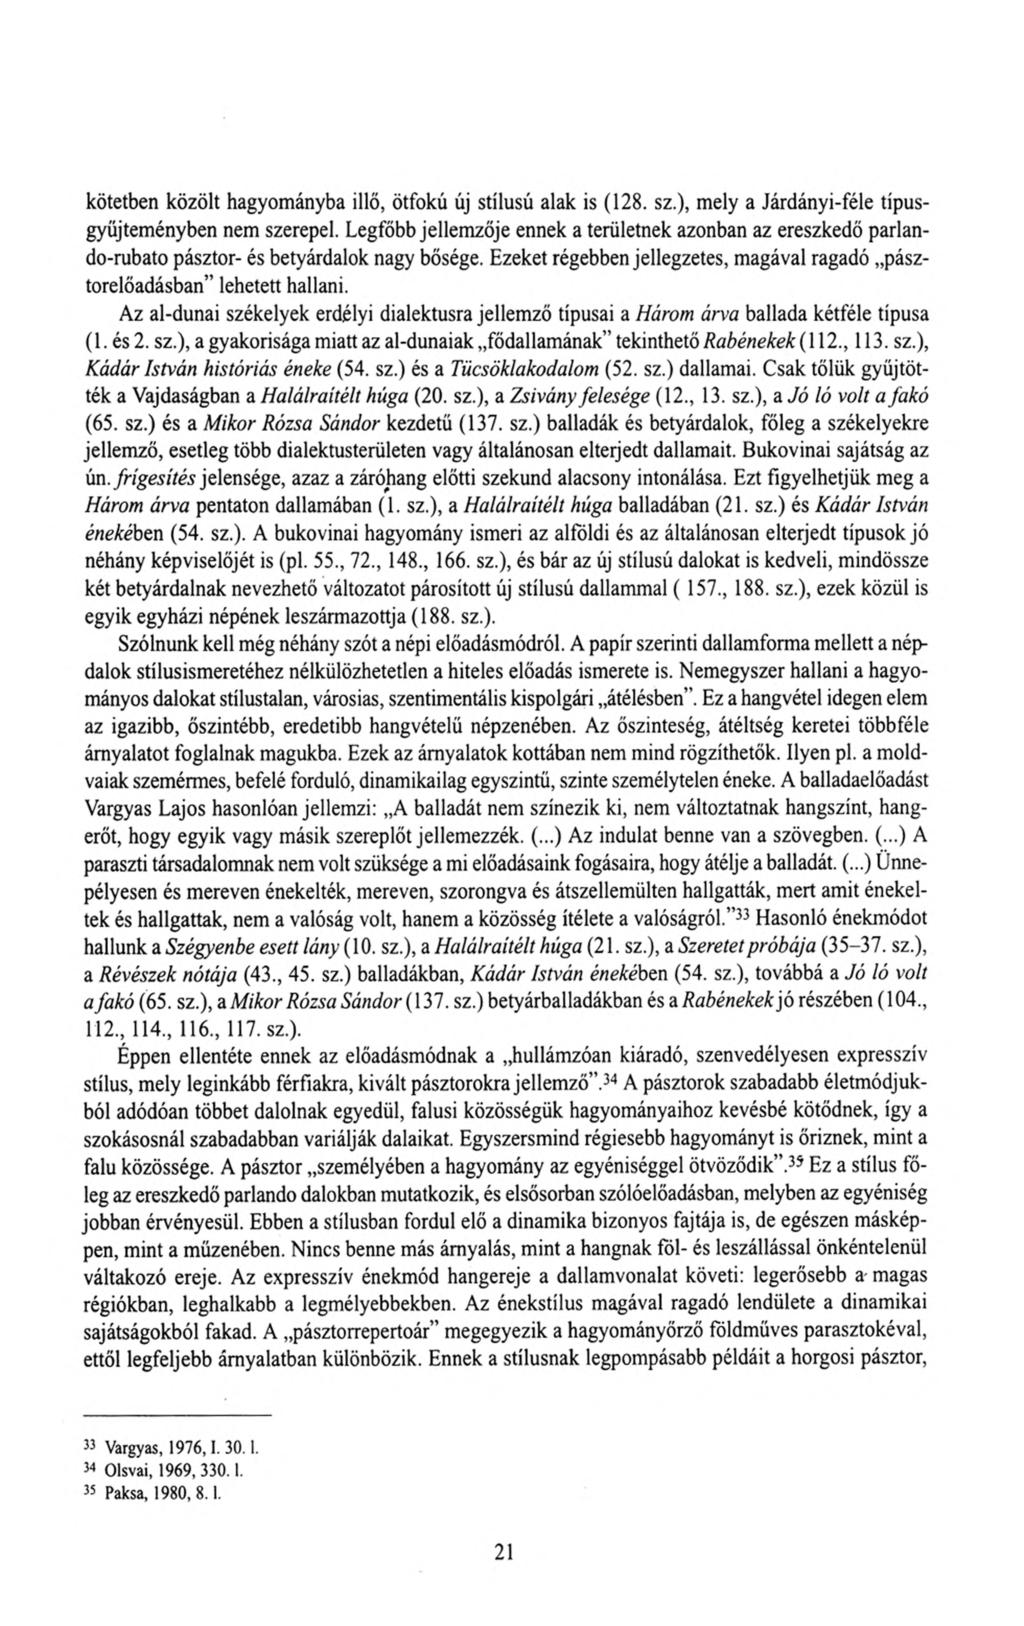 kötetben közölt hagyományba illő, ötfokú új stílusú alak is (128. sz.), mely a Járdányi-féle típusgyüjteményben nem szerepel.